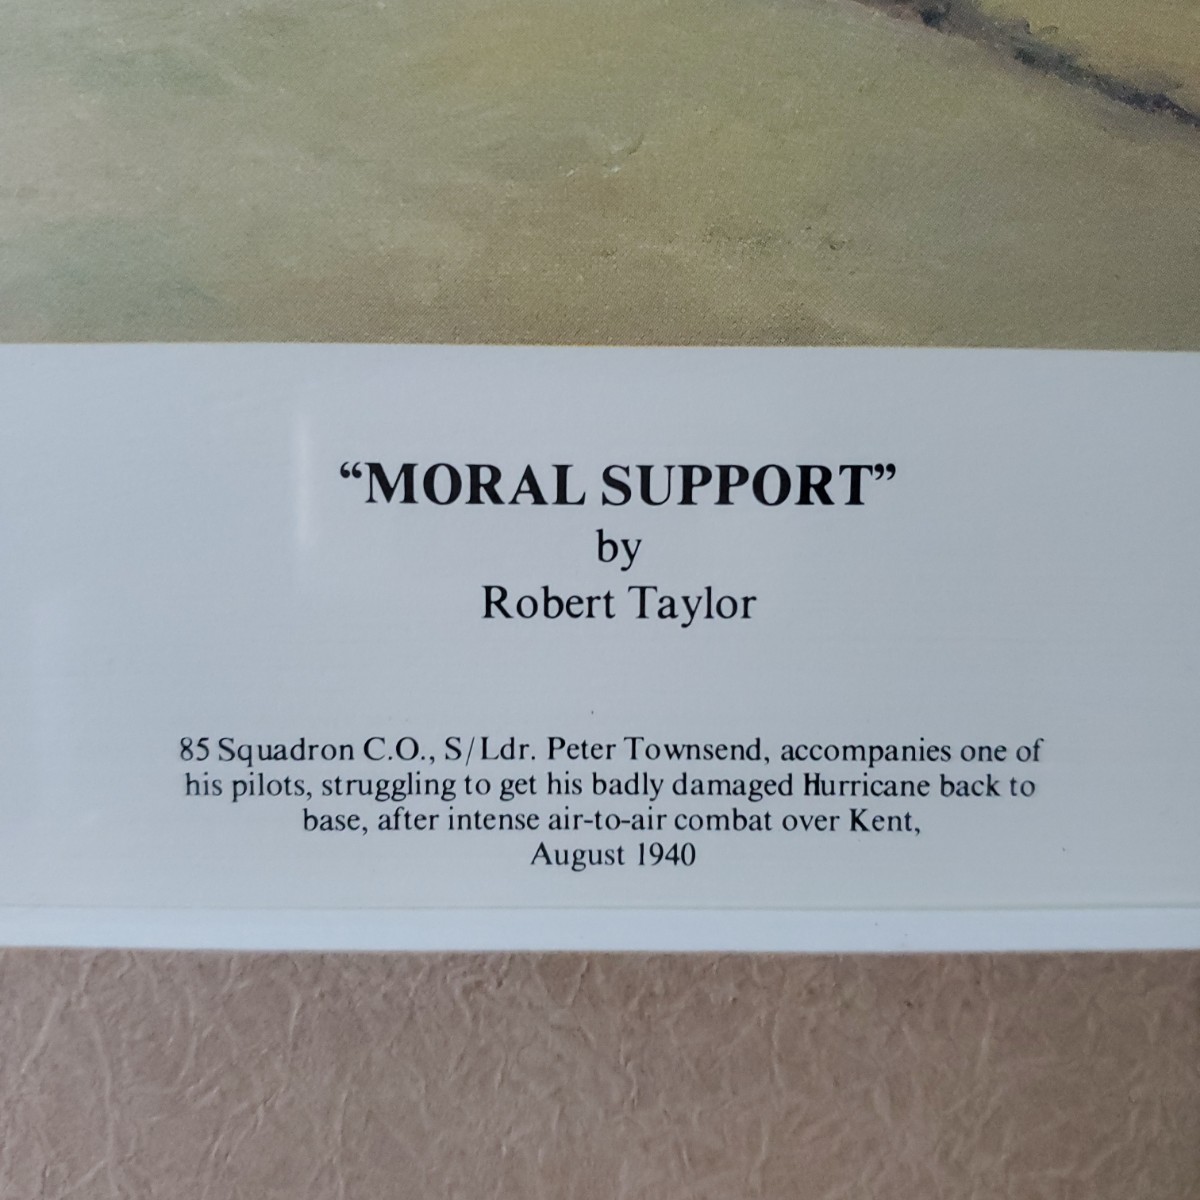 [ сокровище ] авиация картина Robert * Taylor molaru* поддержка Robert Taylor MORAL SUPPORT